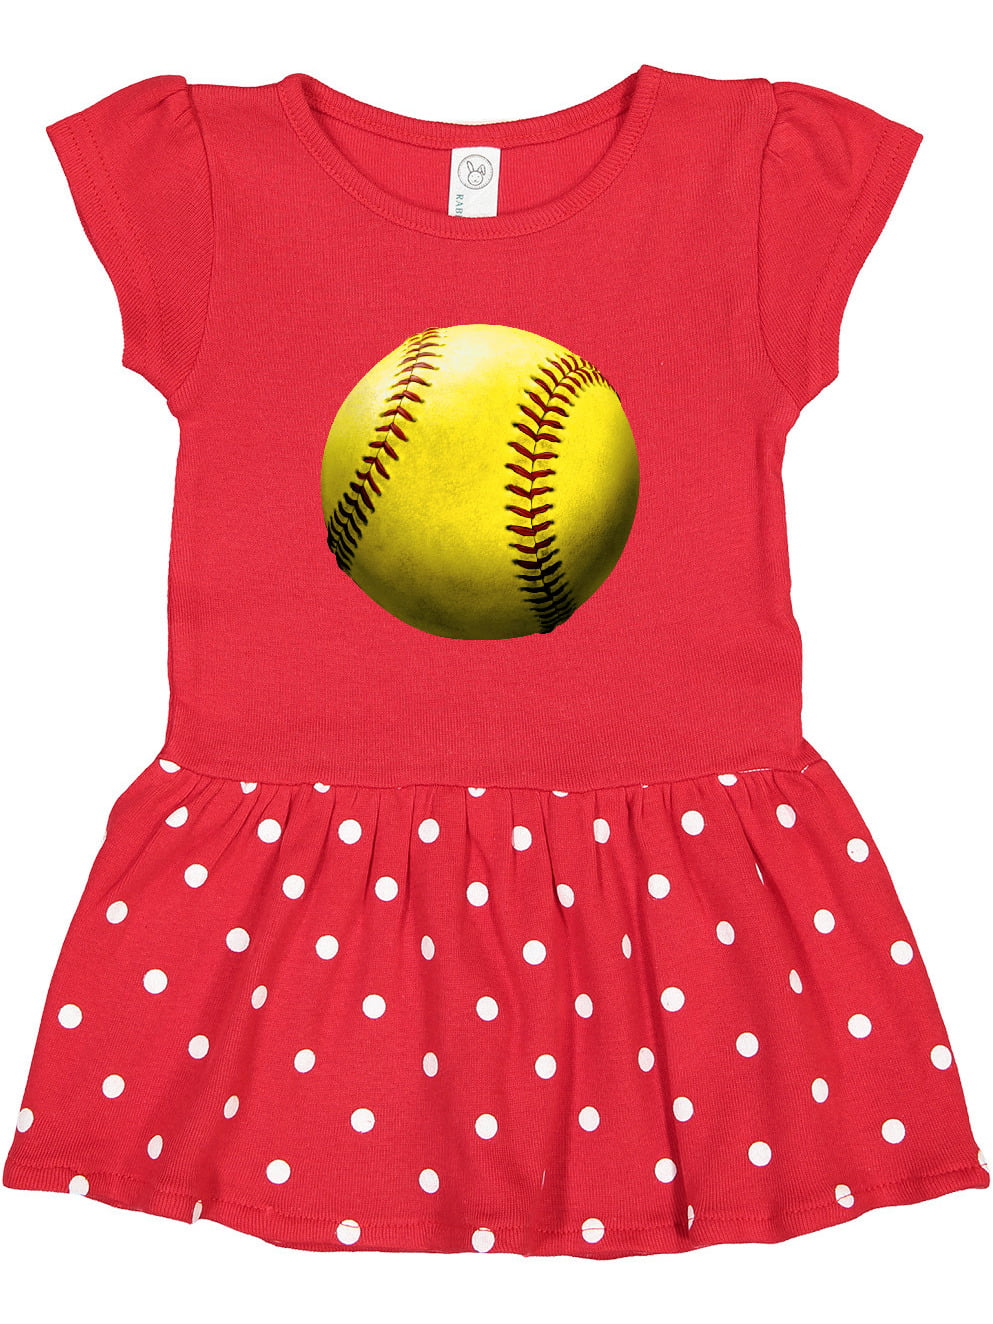 Baseball Heart Red Bodysuit Red White Skirt Girl One Piece Baby Dress NB-18Month 